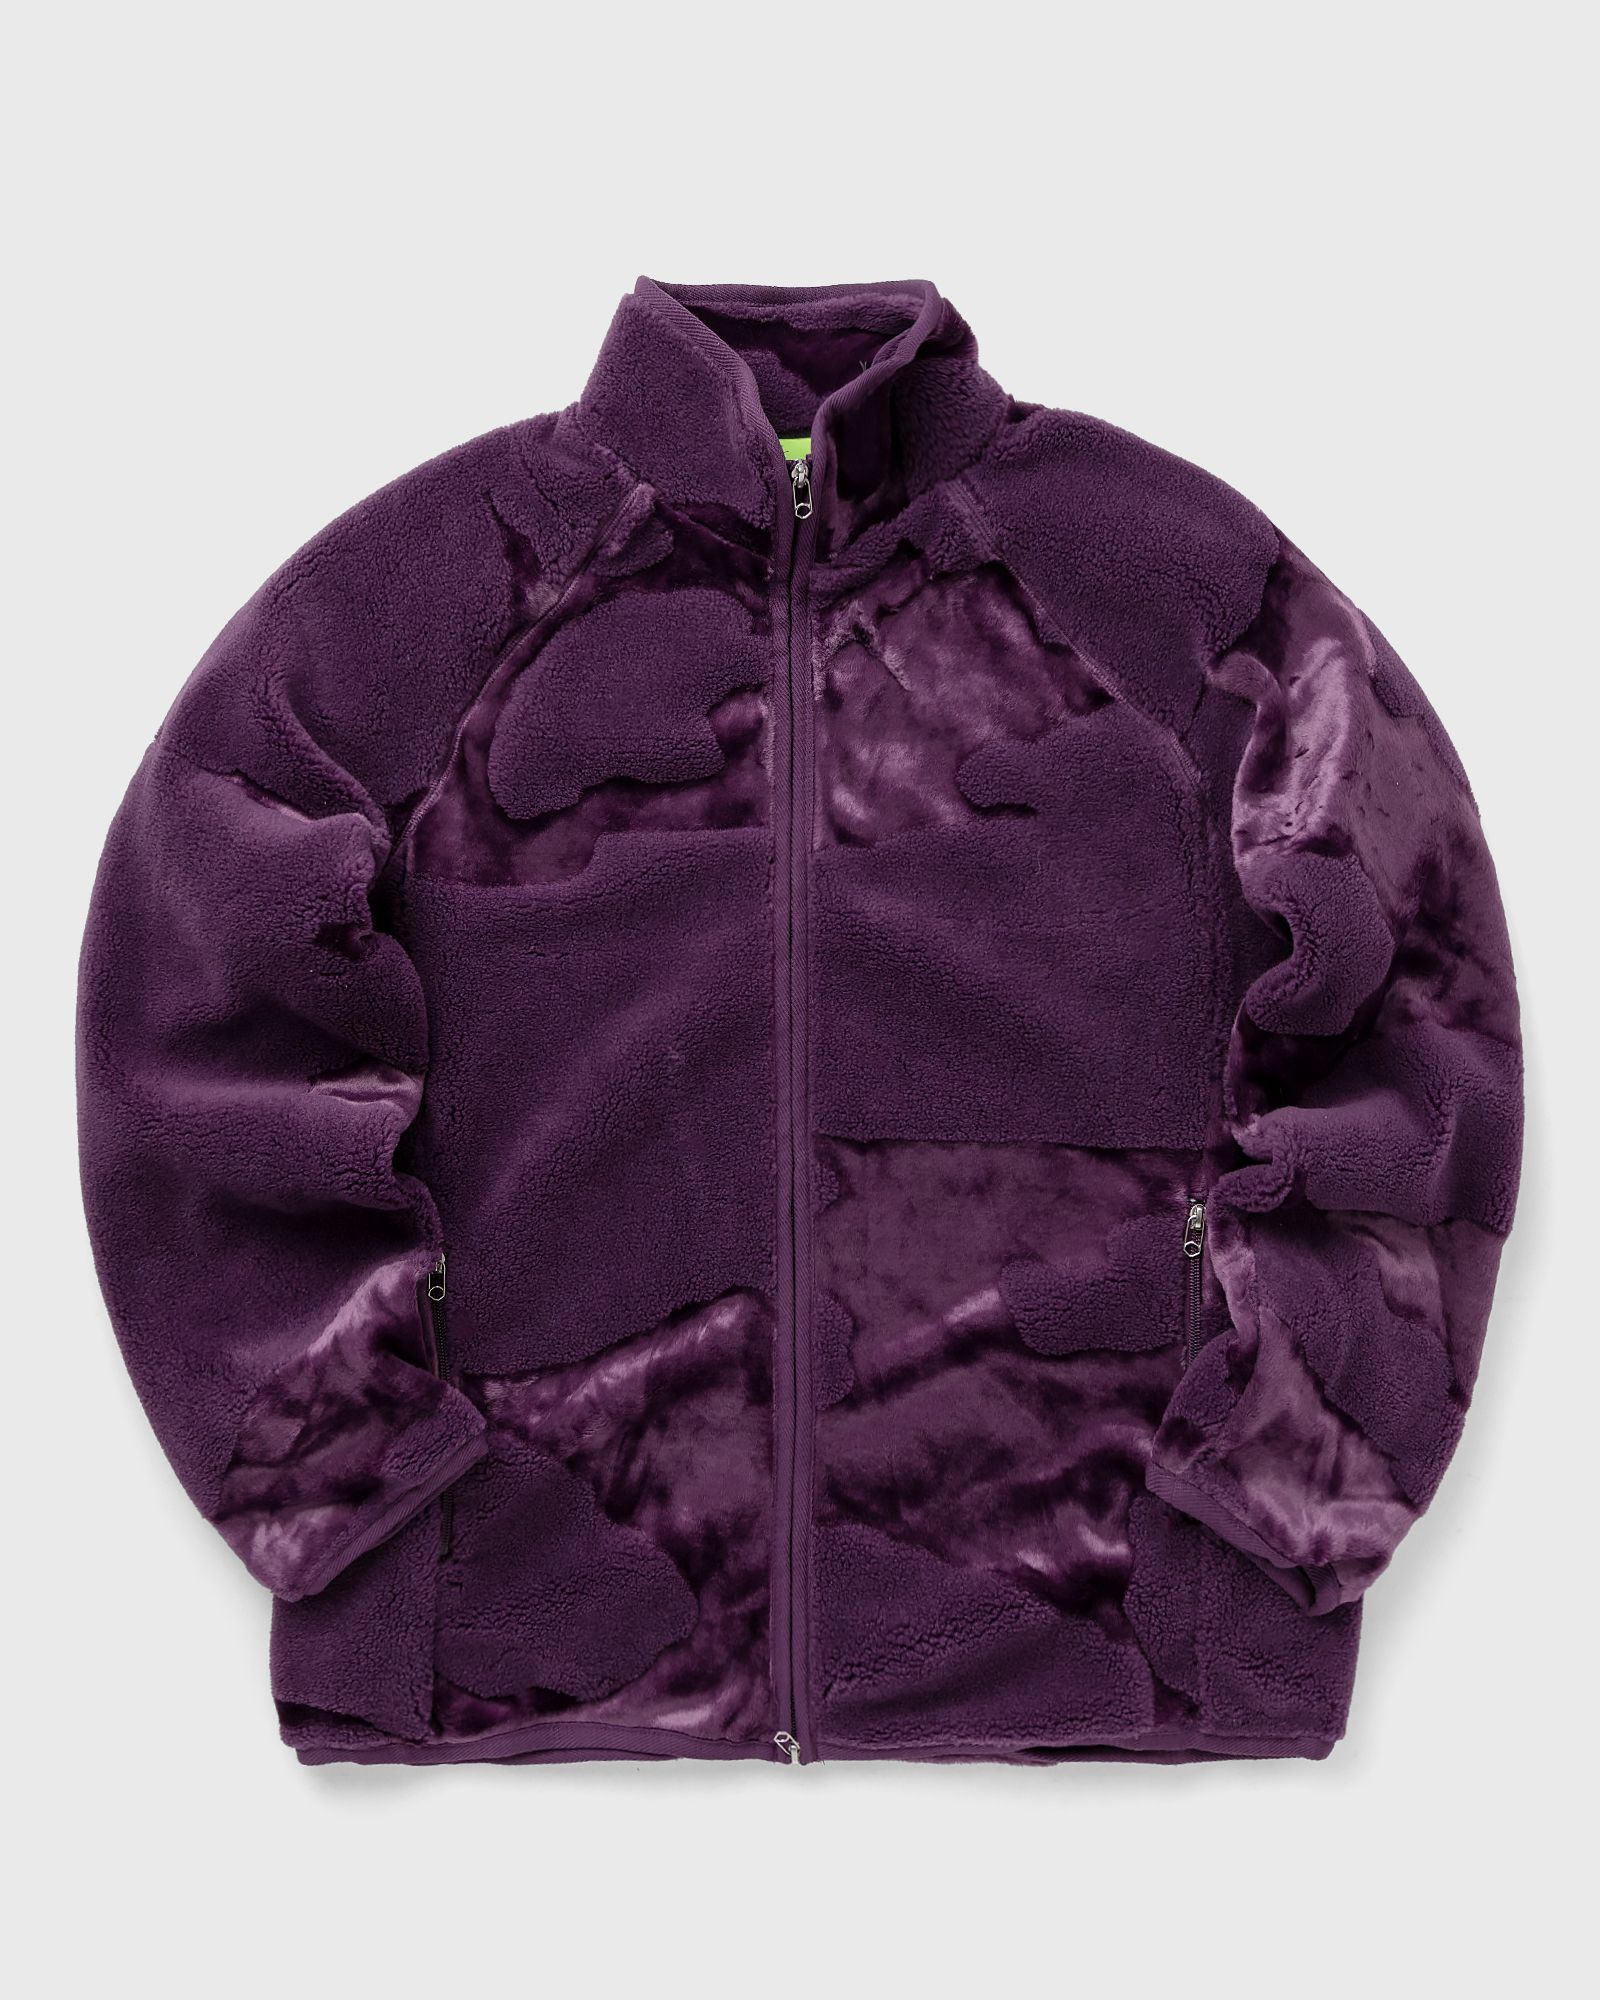 New Amsterdam - cow full-zip men fleece jackets purple in größe:xl